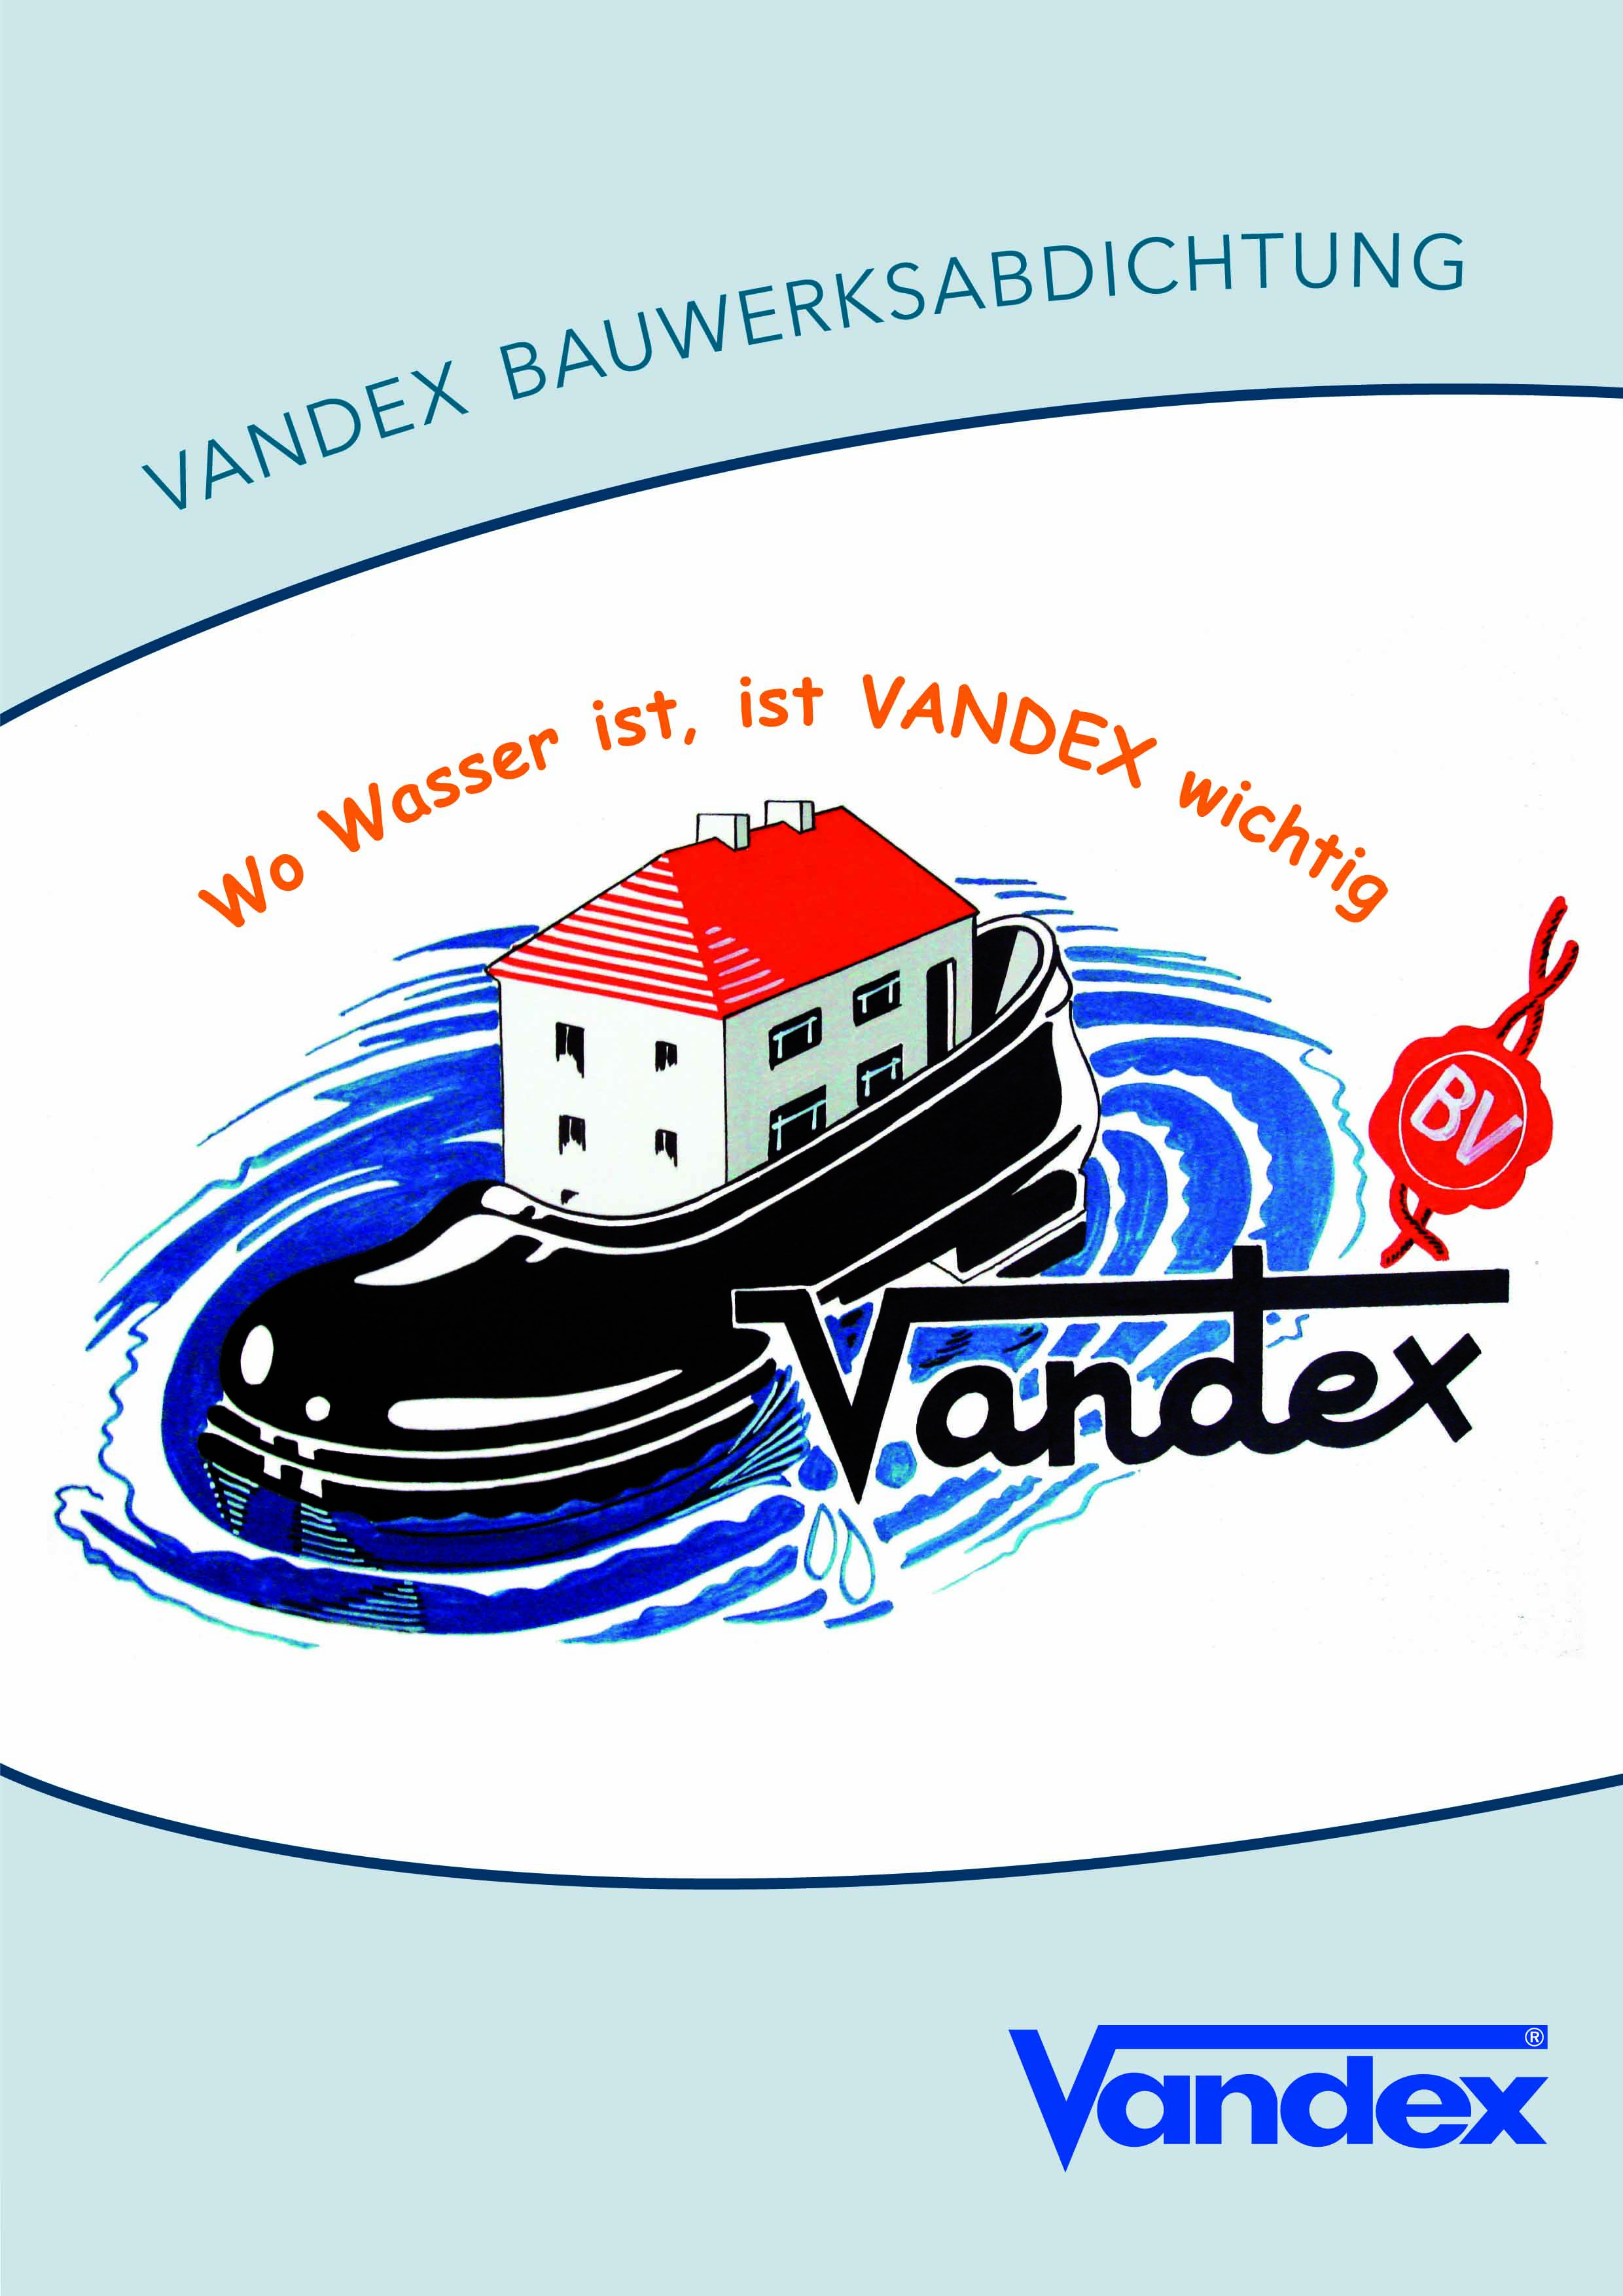 Vandex Bauwerksabdichtung